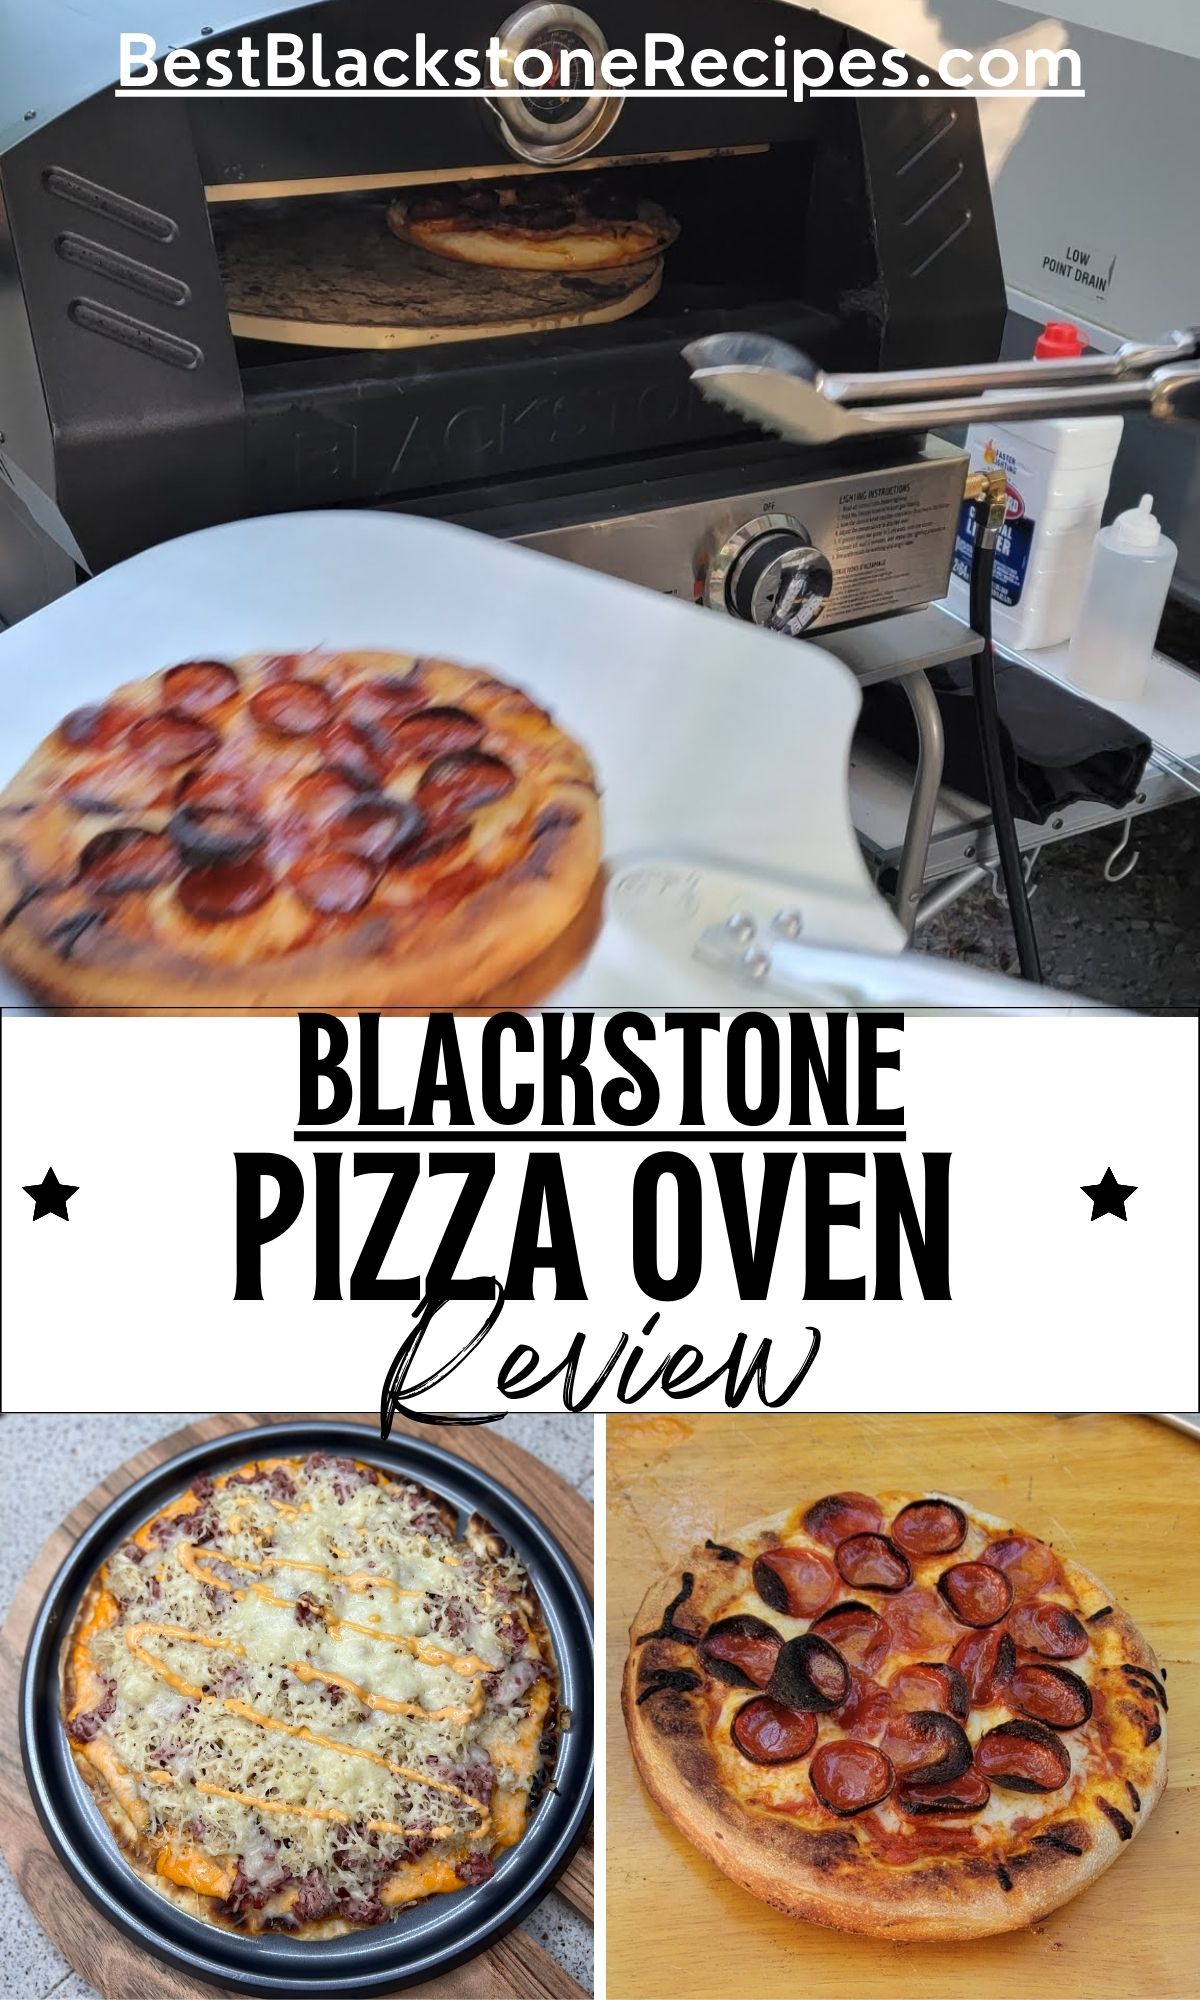 Blackstone pizza oven review.